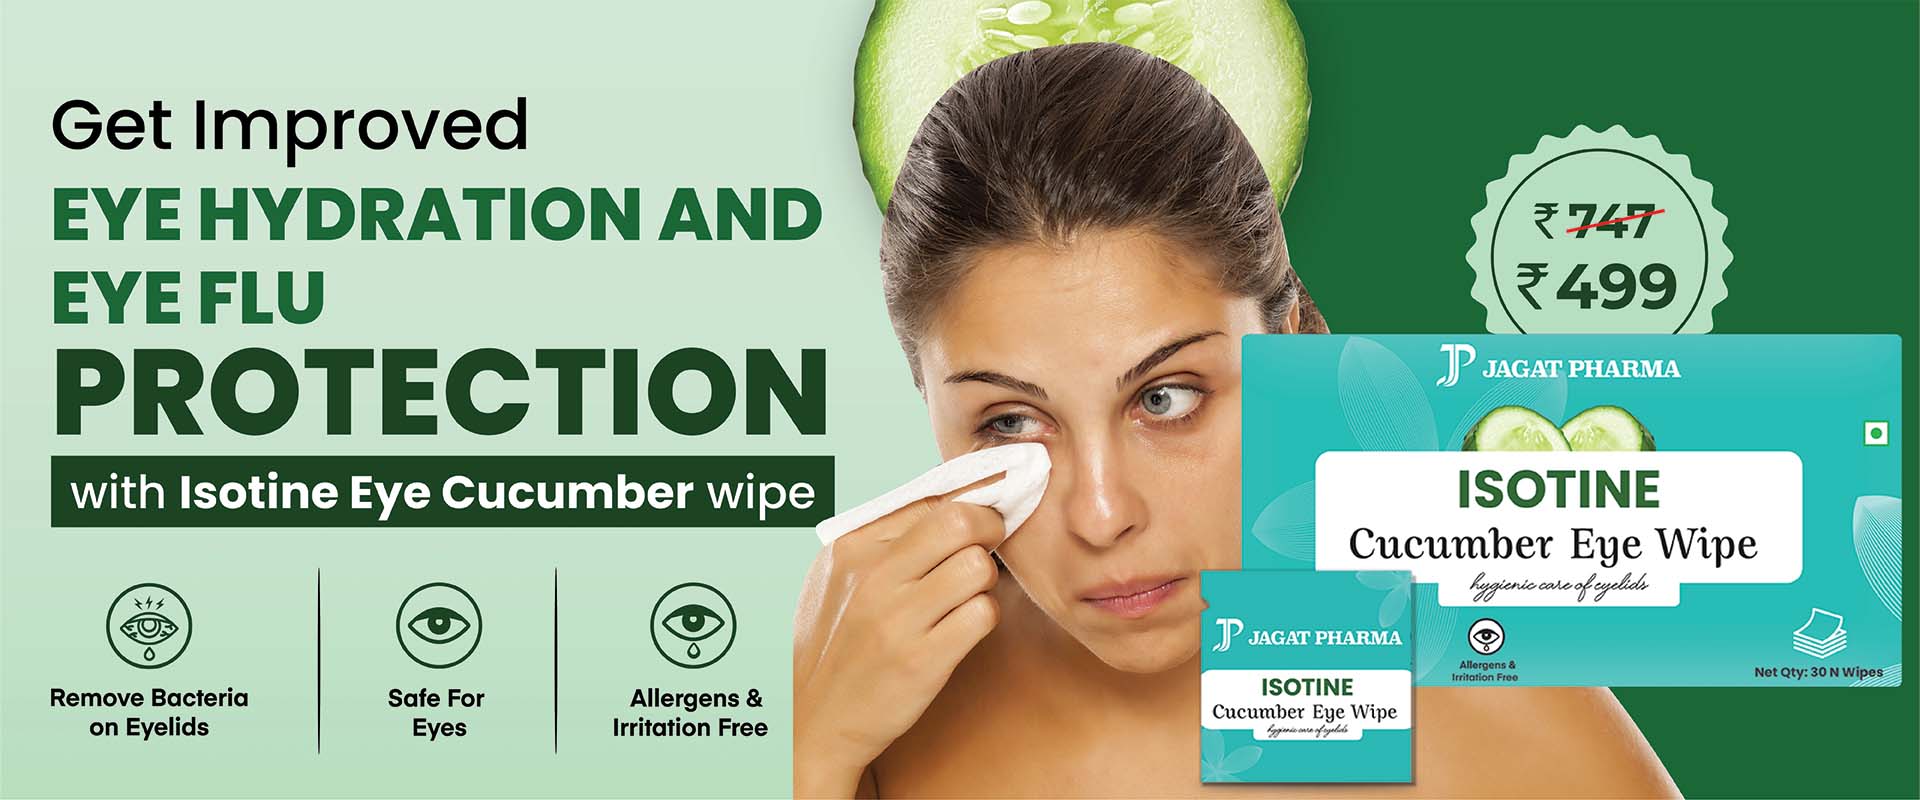 Isotine Cucumber Eye Wipes For eye flu